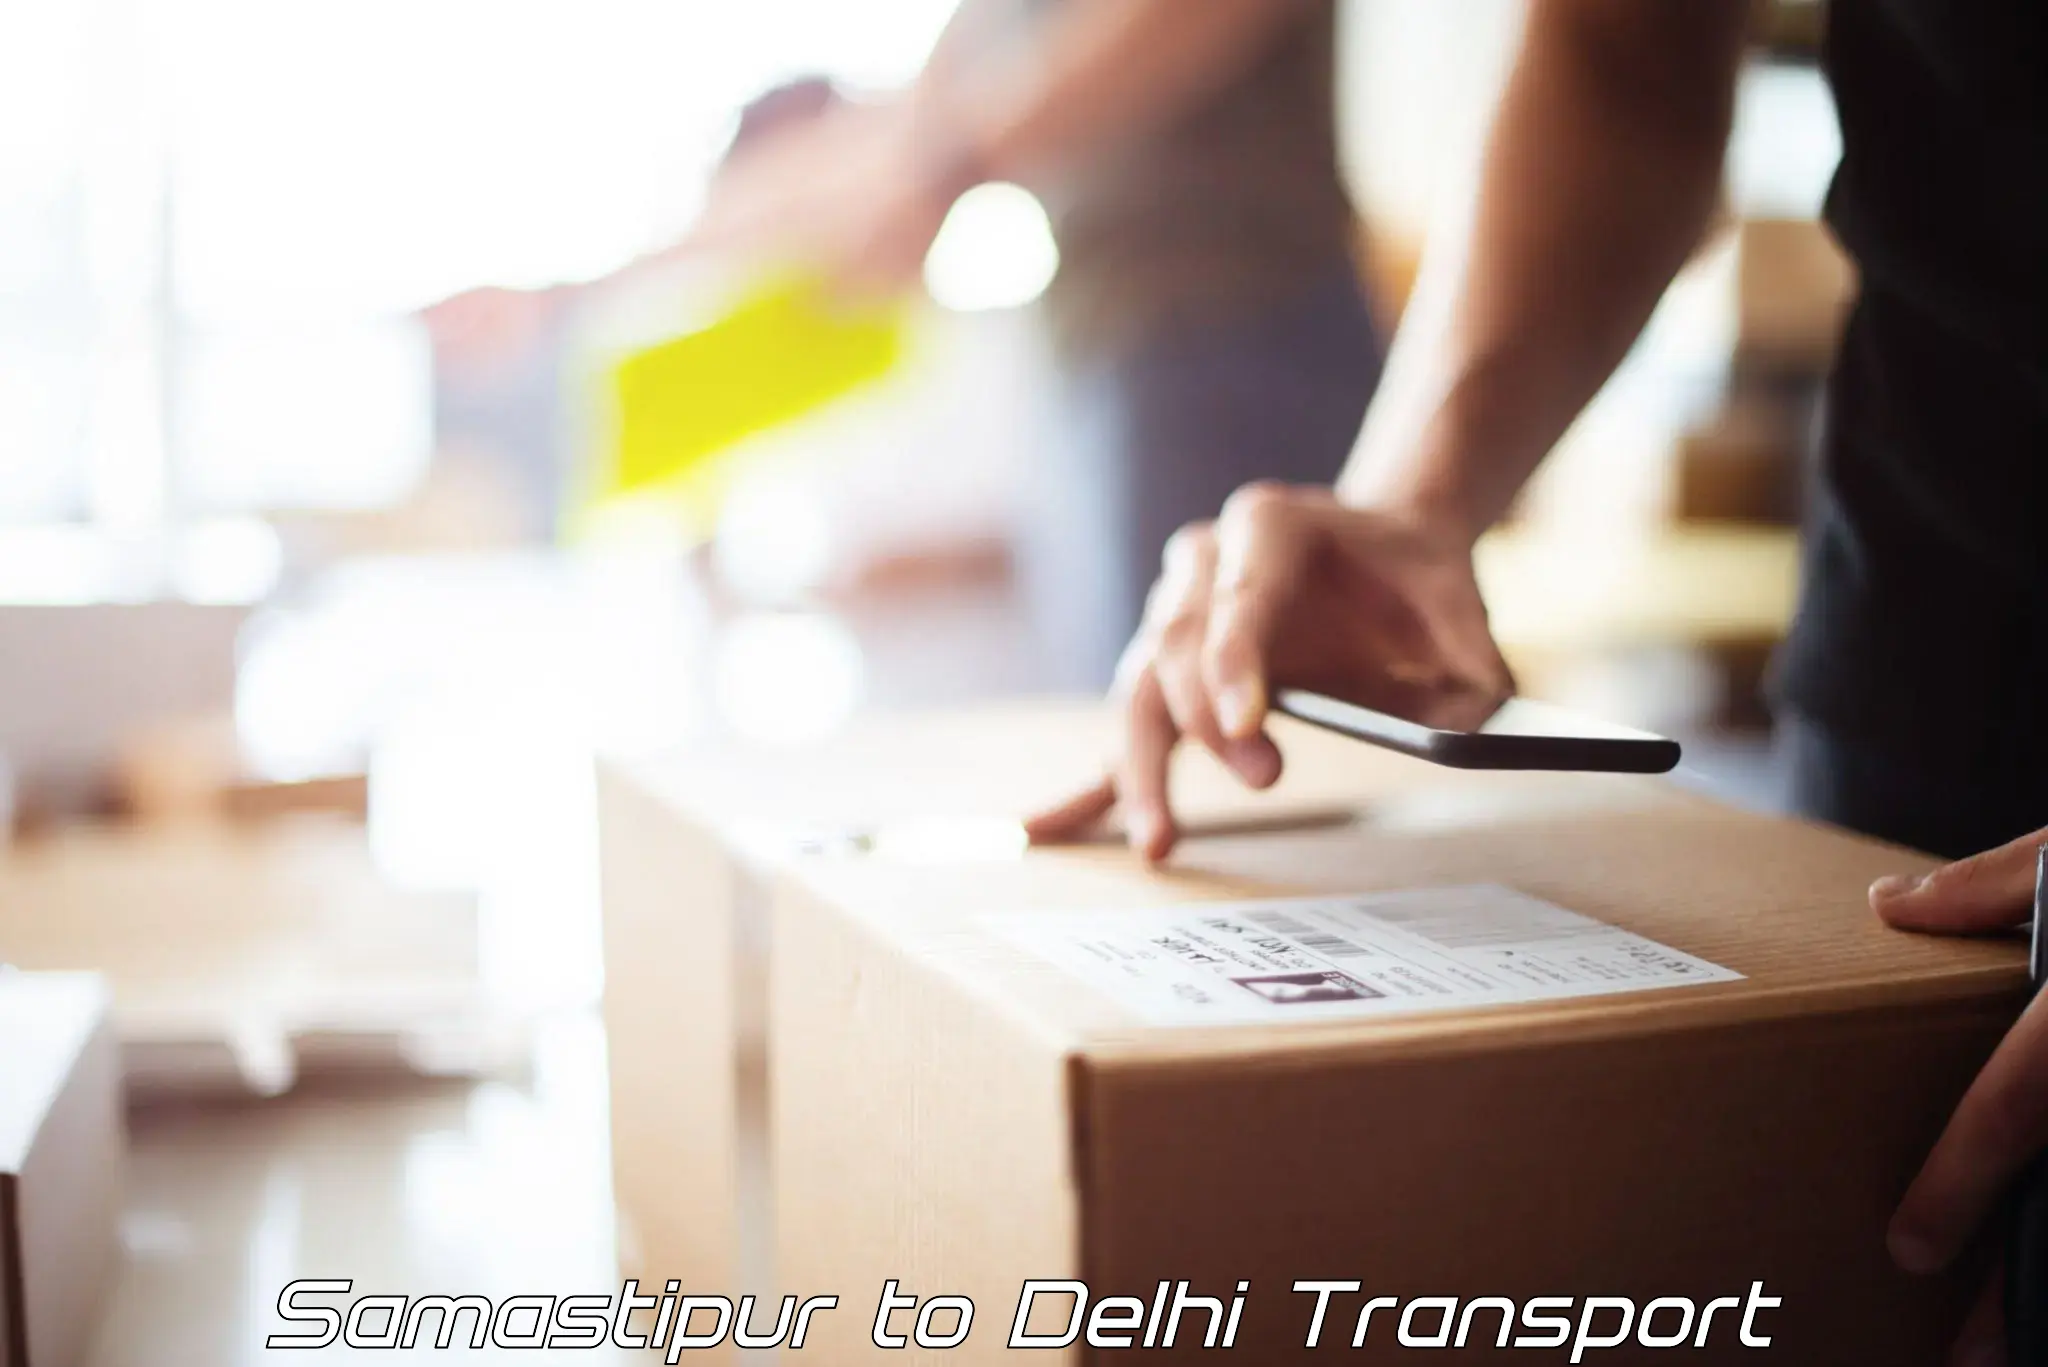 Nationwide transport services Samastipur to Delhi Technological University DTU